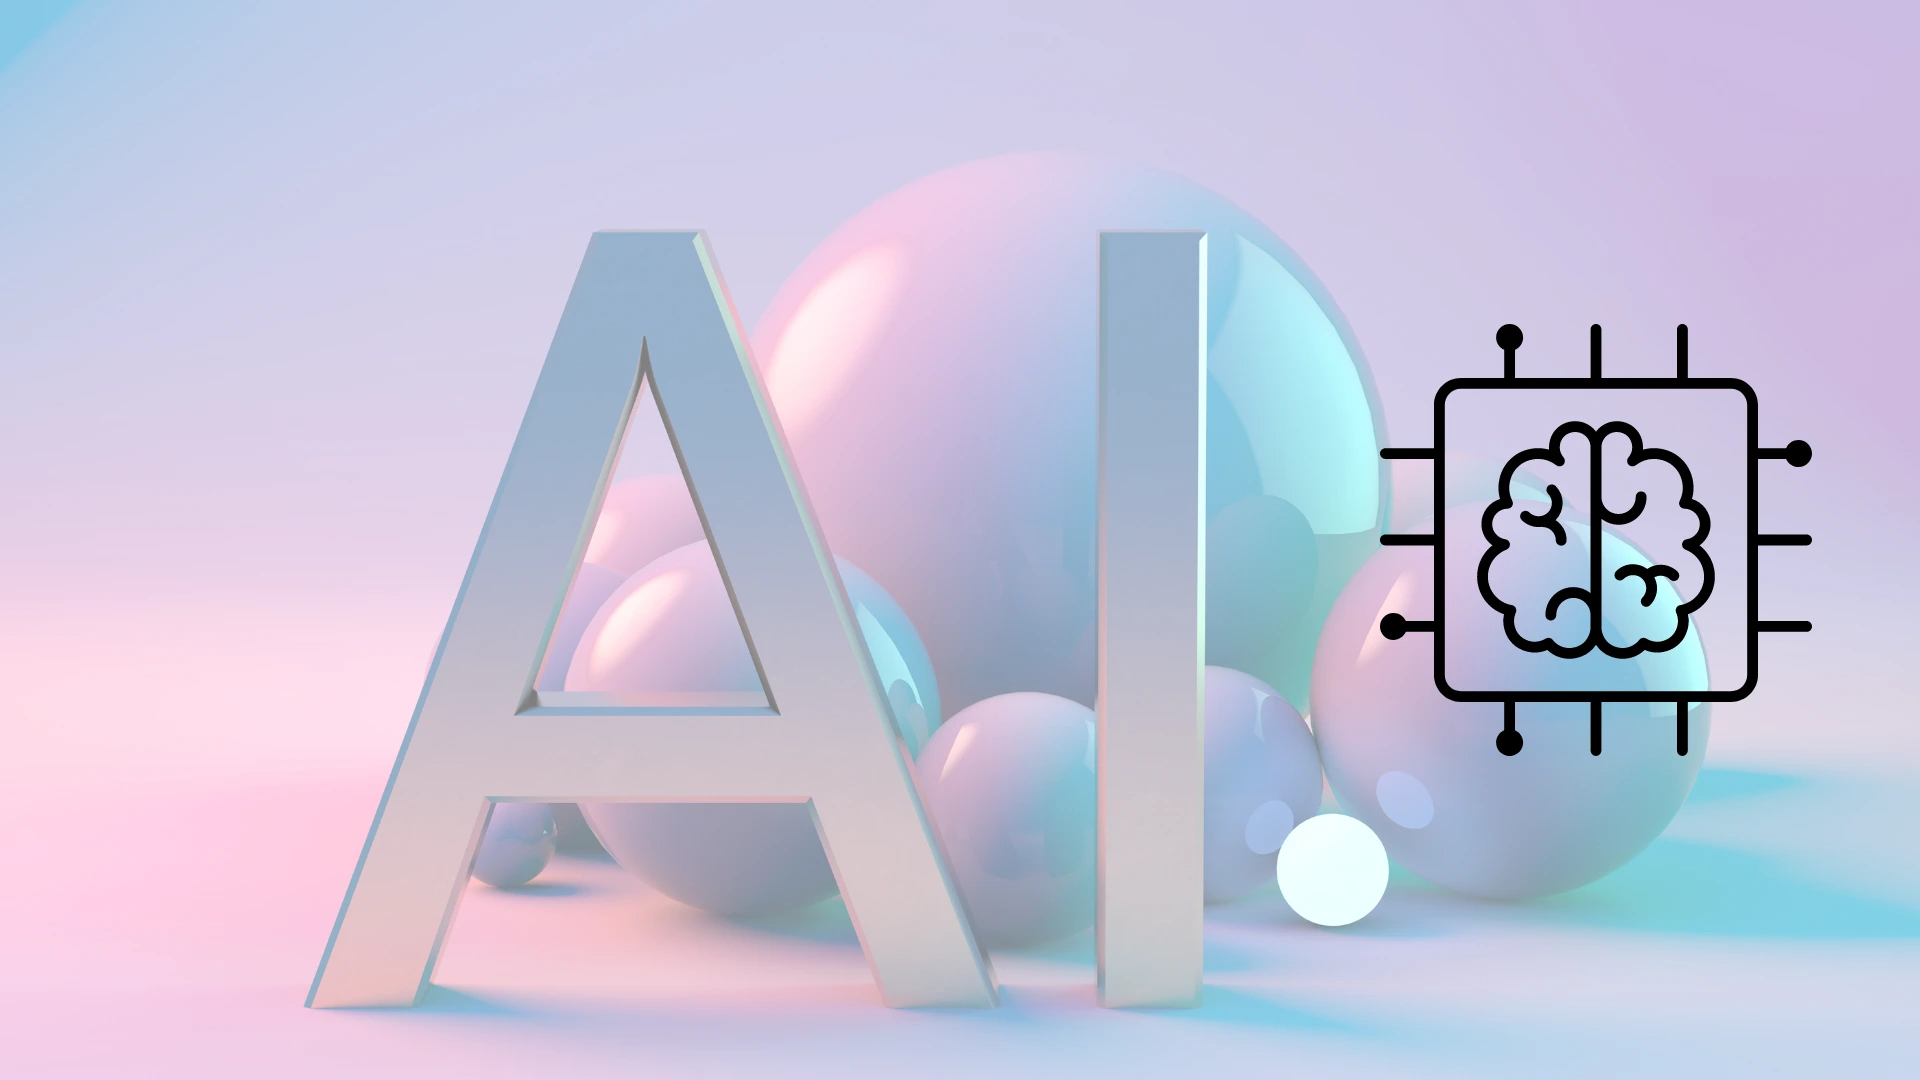 Diseño 3D minimalista con las letras "AI"